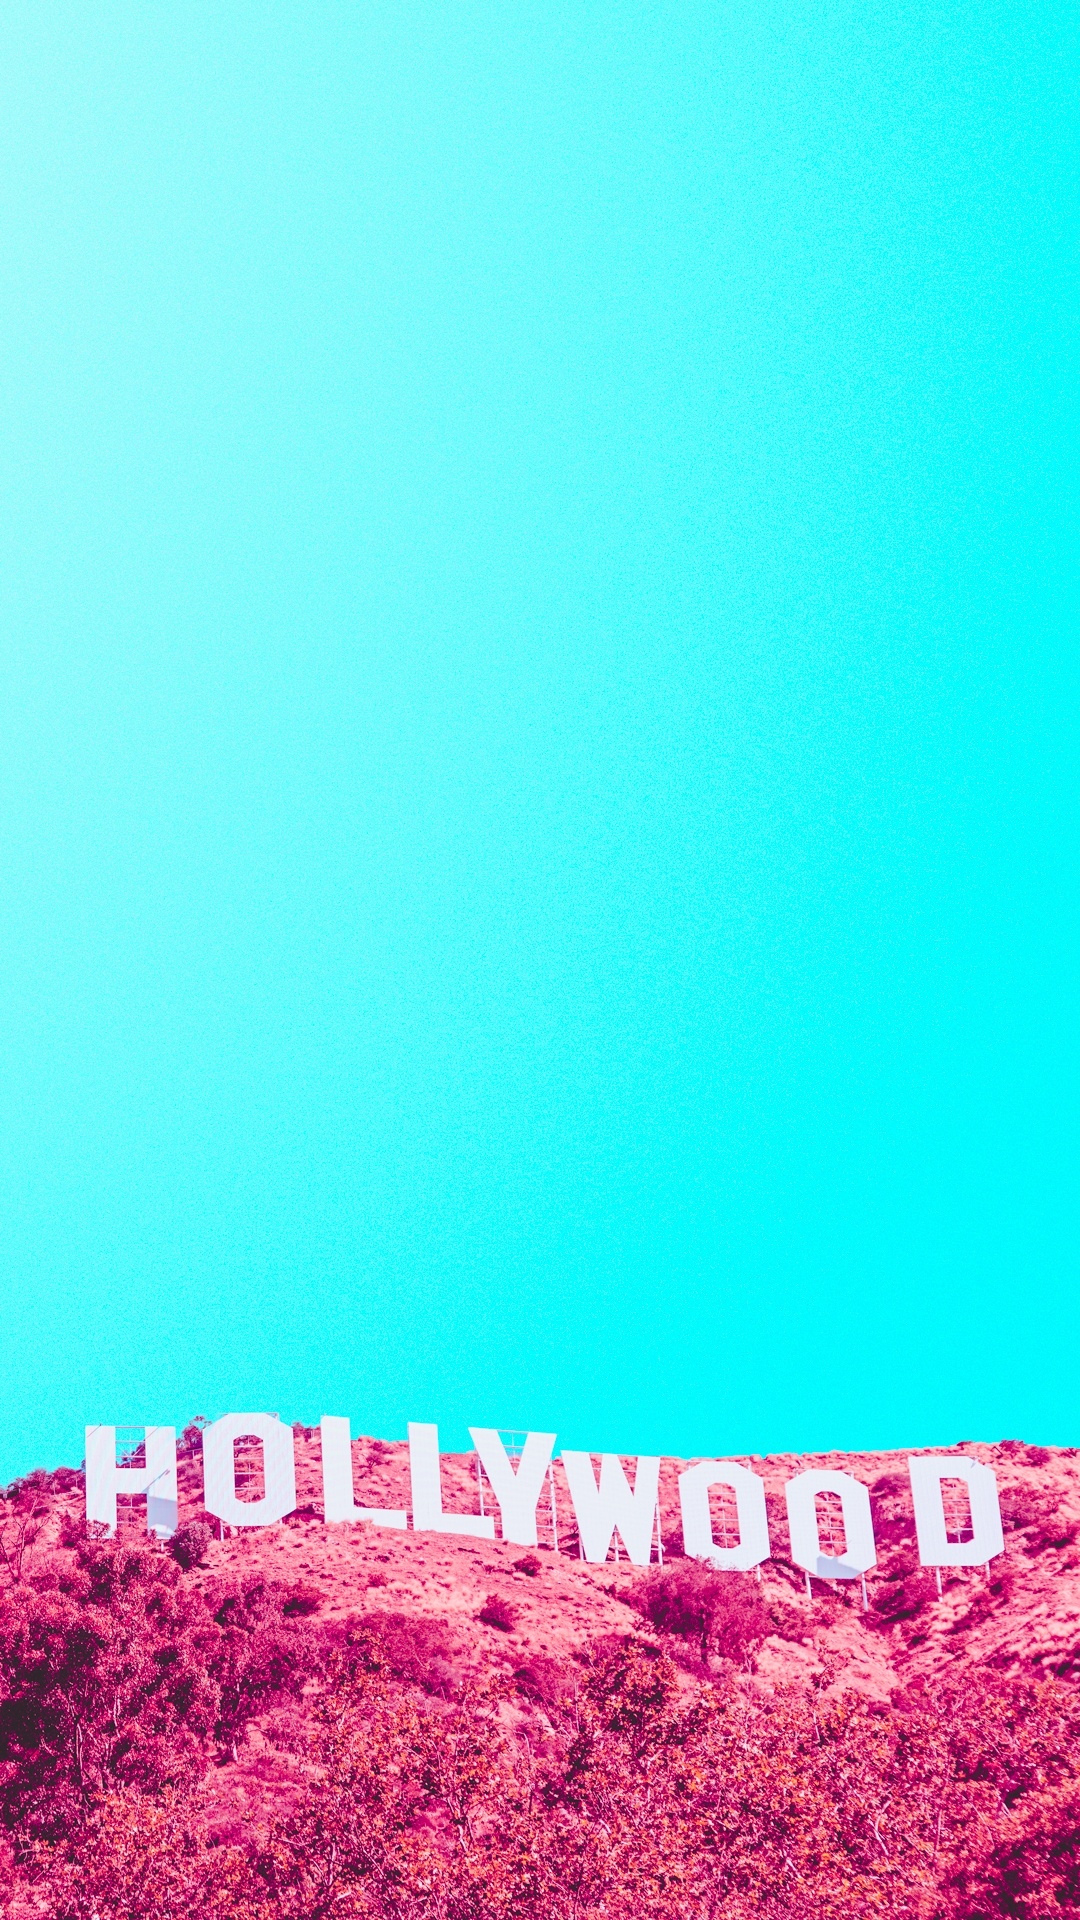 好莱坞山标志红外